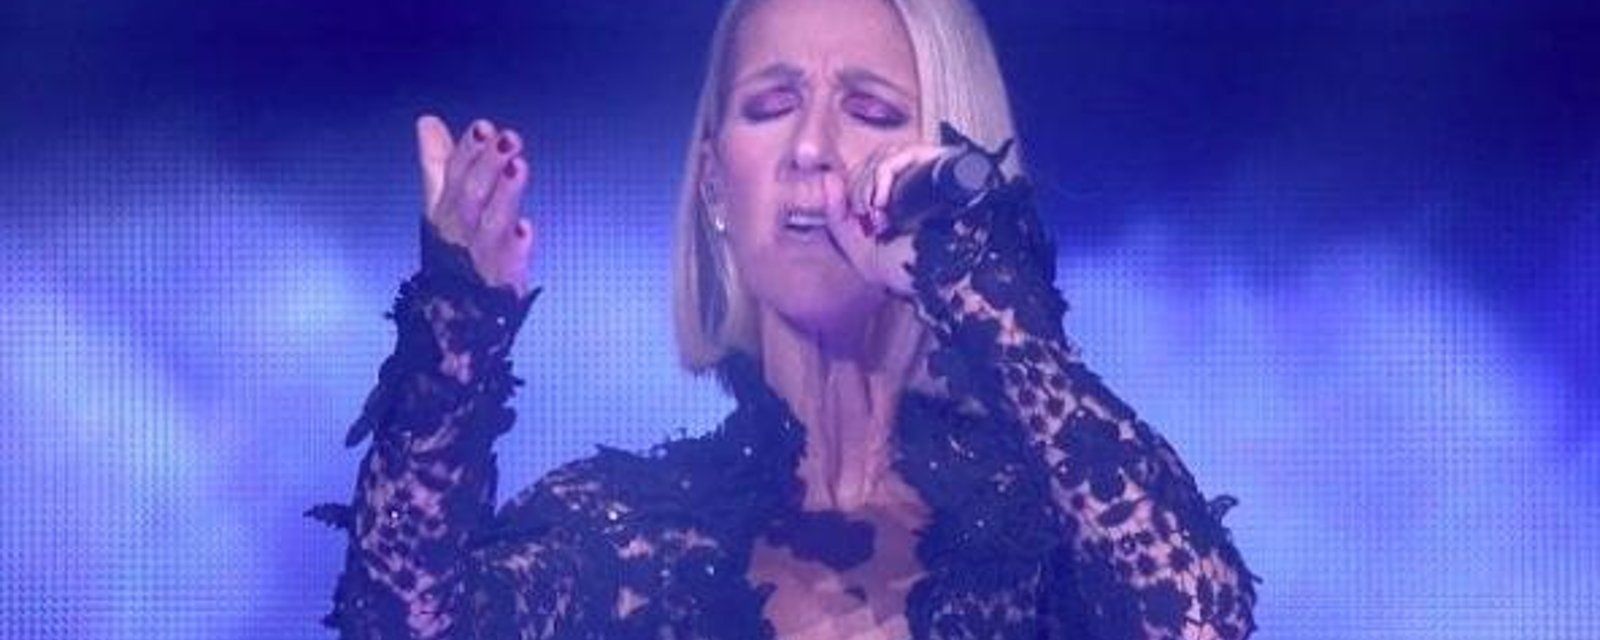 La santé de Céline Dion inquiète ses fans, après une performance difficile à Ottawa, hier soir